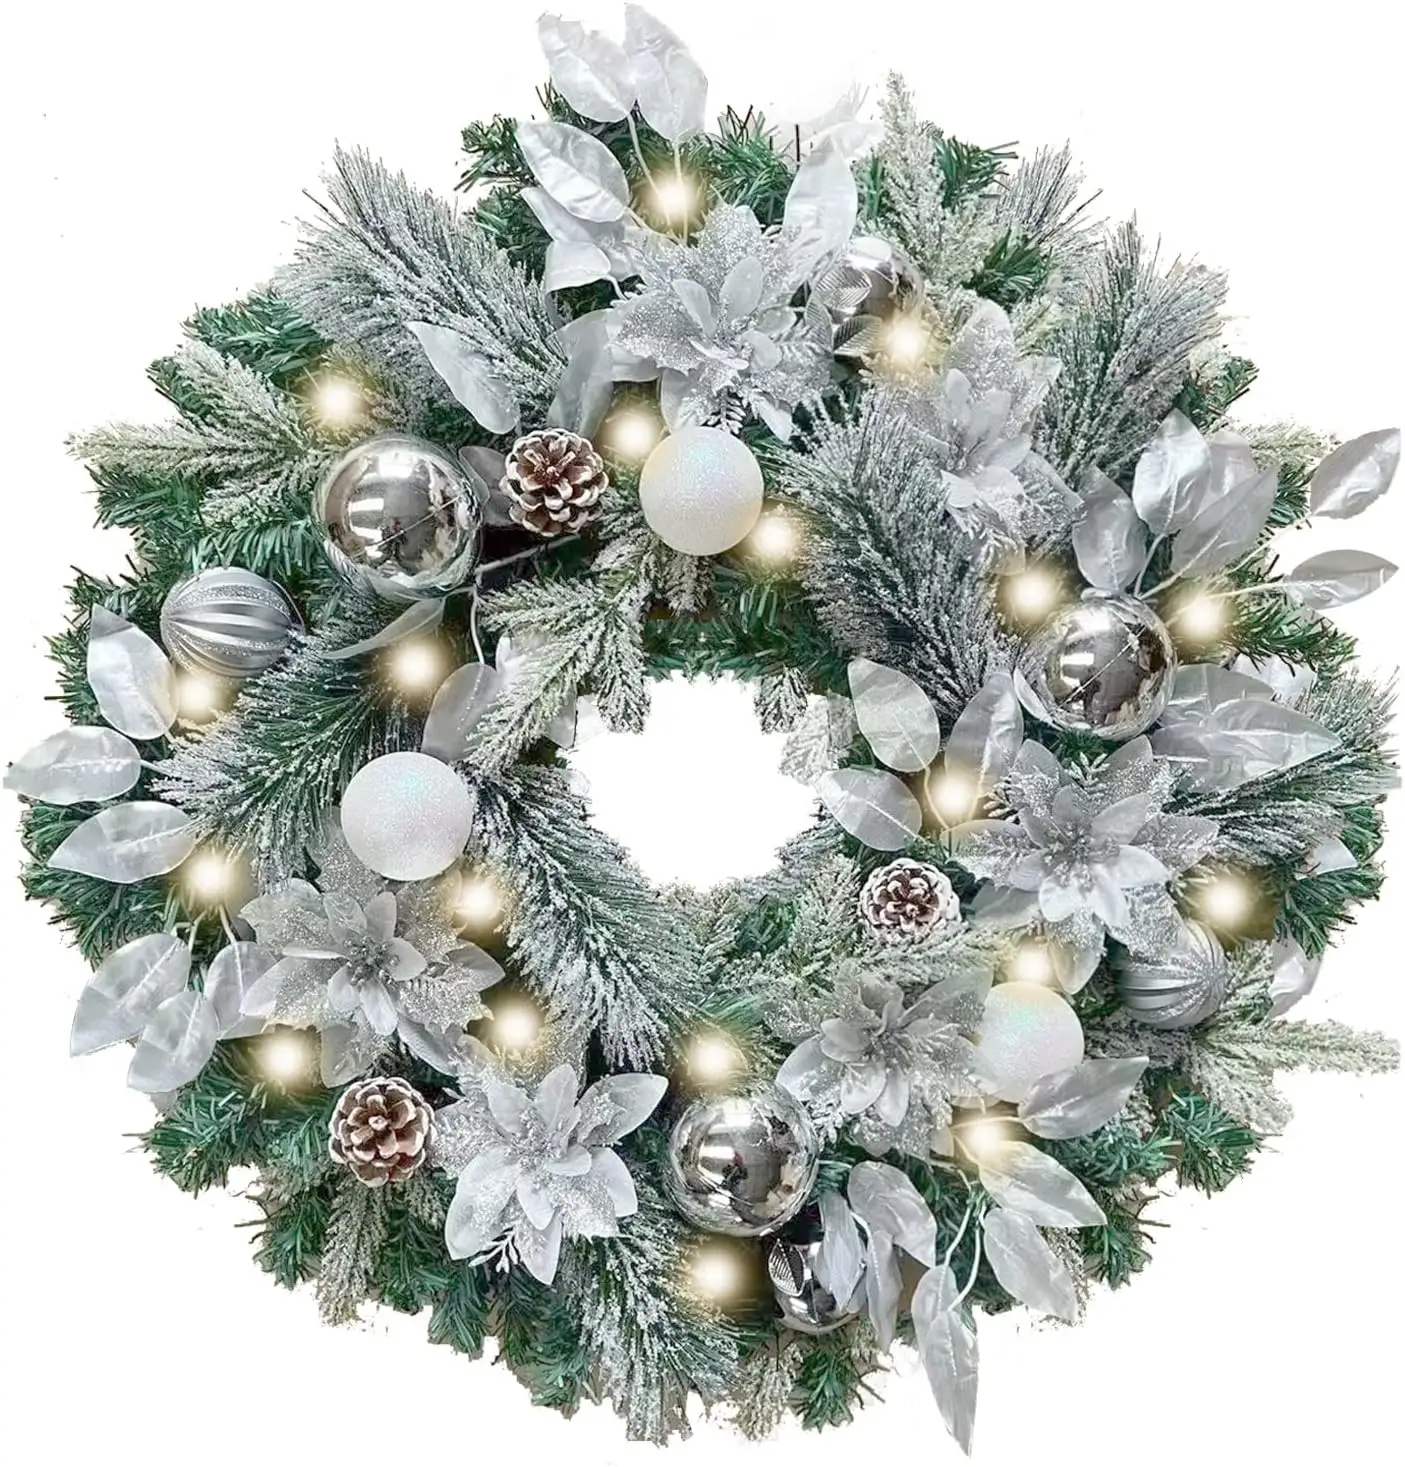 Guirnalda navideña iluminada previamente para decoración de puerta delantera con adornos de bolas de Navidad blancas plateadas de 24 pulgadas